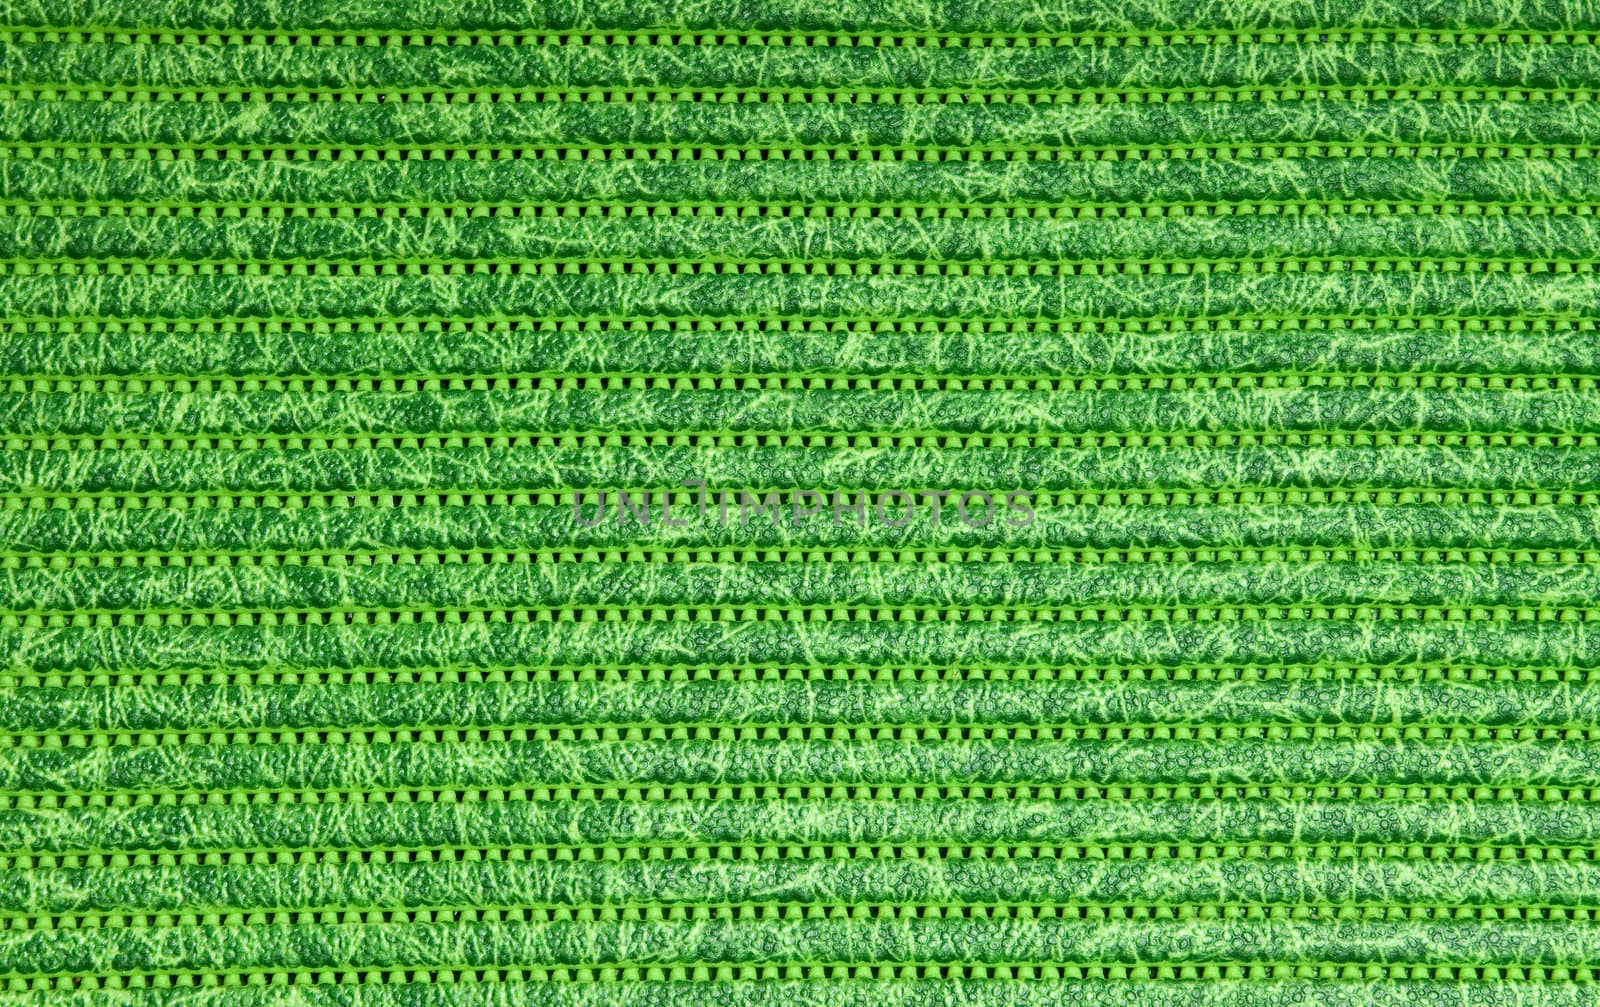 shooting close-up a green rubber mat 